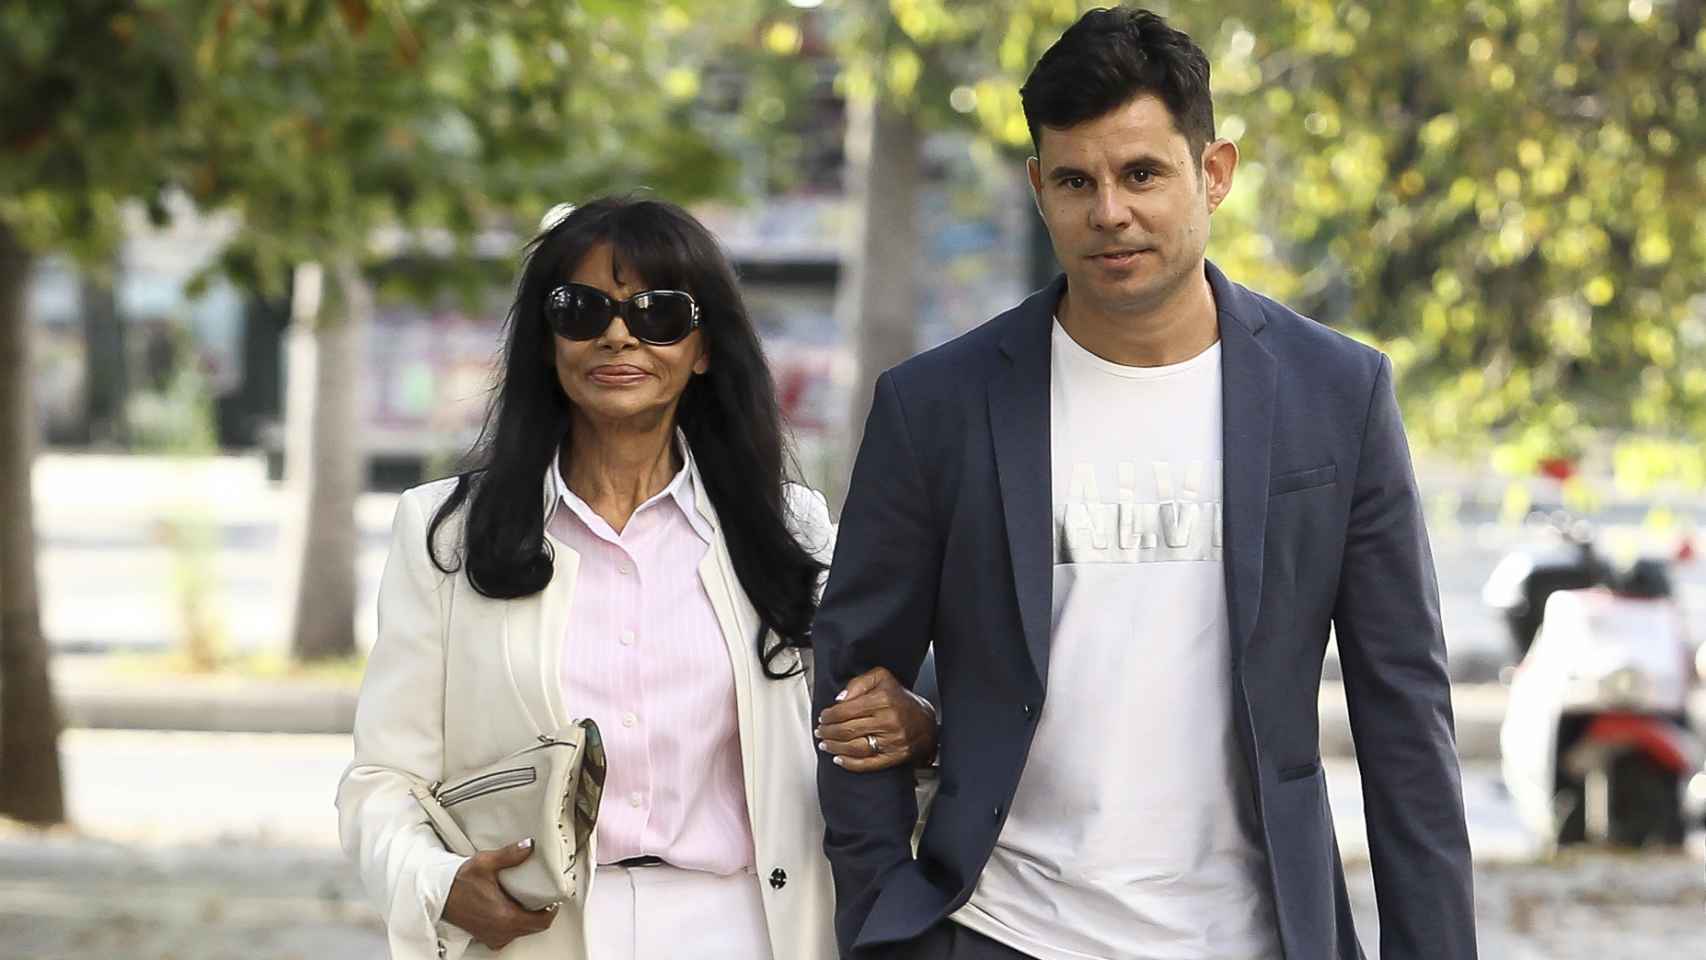 Javier Santos y María Edite llegando a los Juzgados de Valencia donde se dirime su demanda por paternidad.